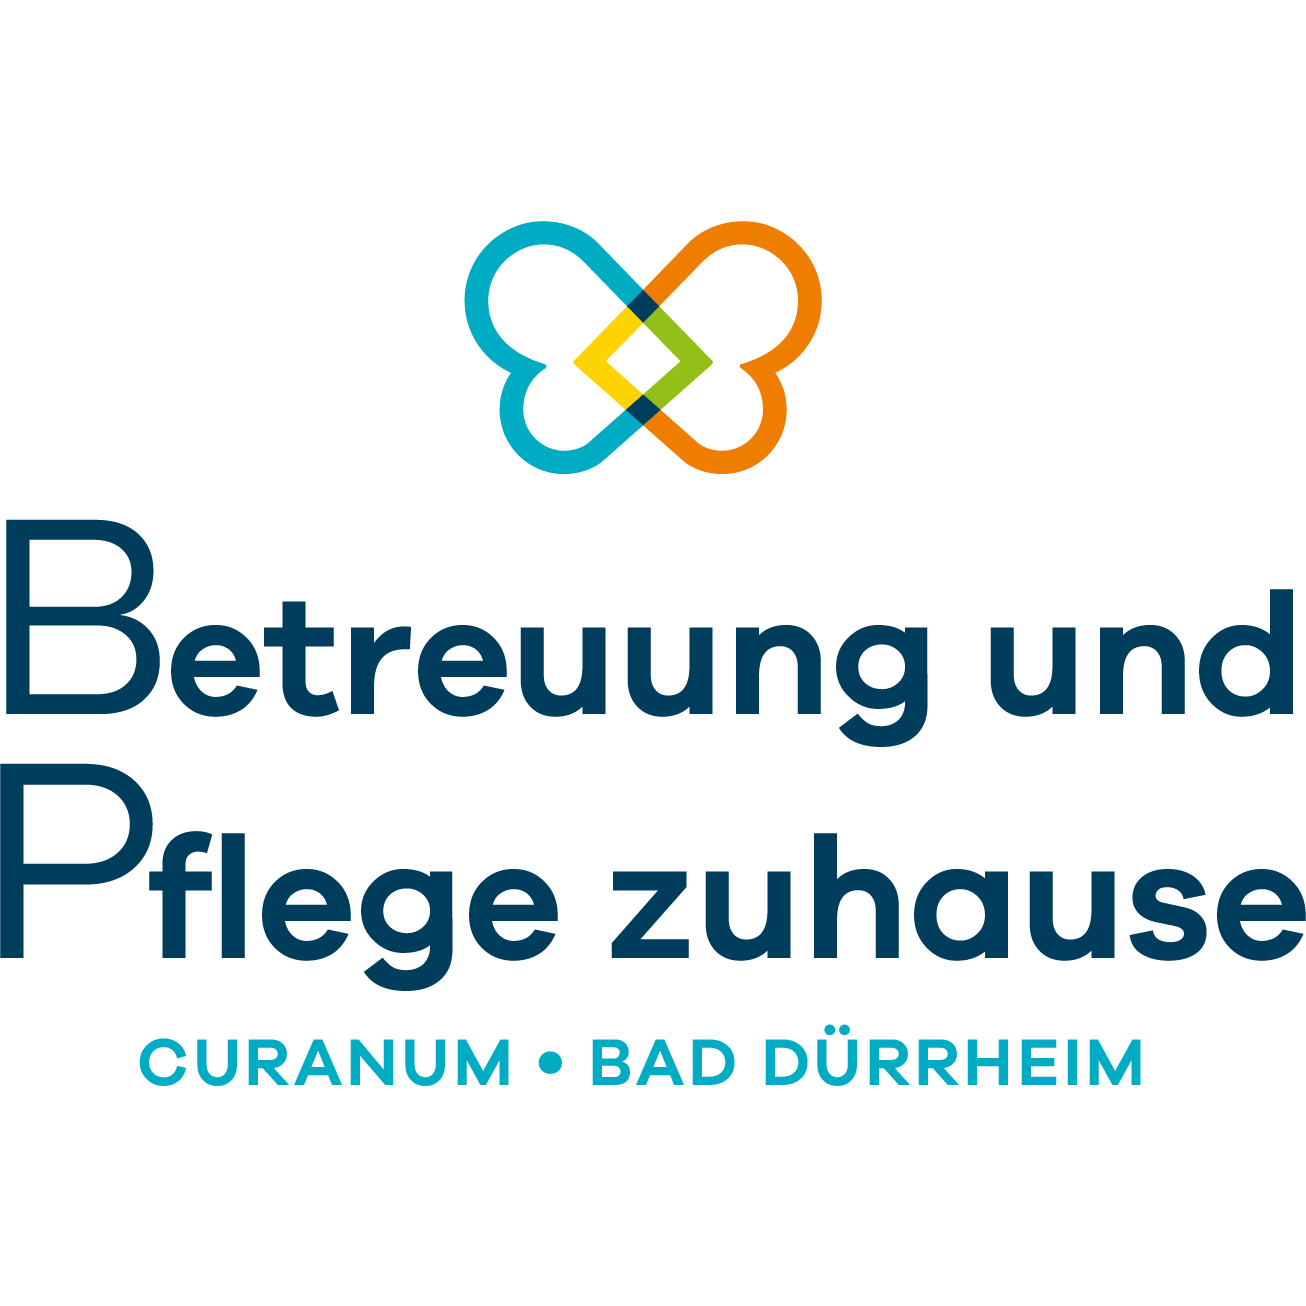 Betreuung und Pflege zuhause Curanum Bad Dürrheim Logo